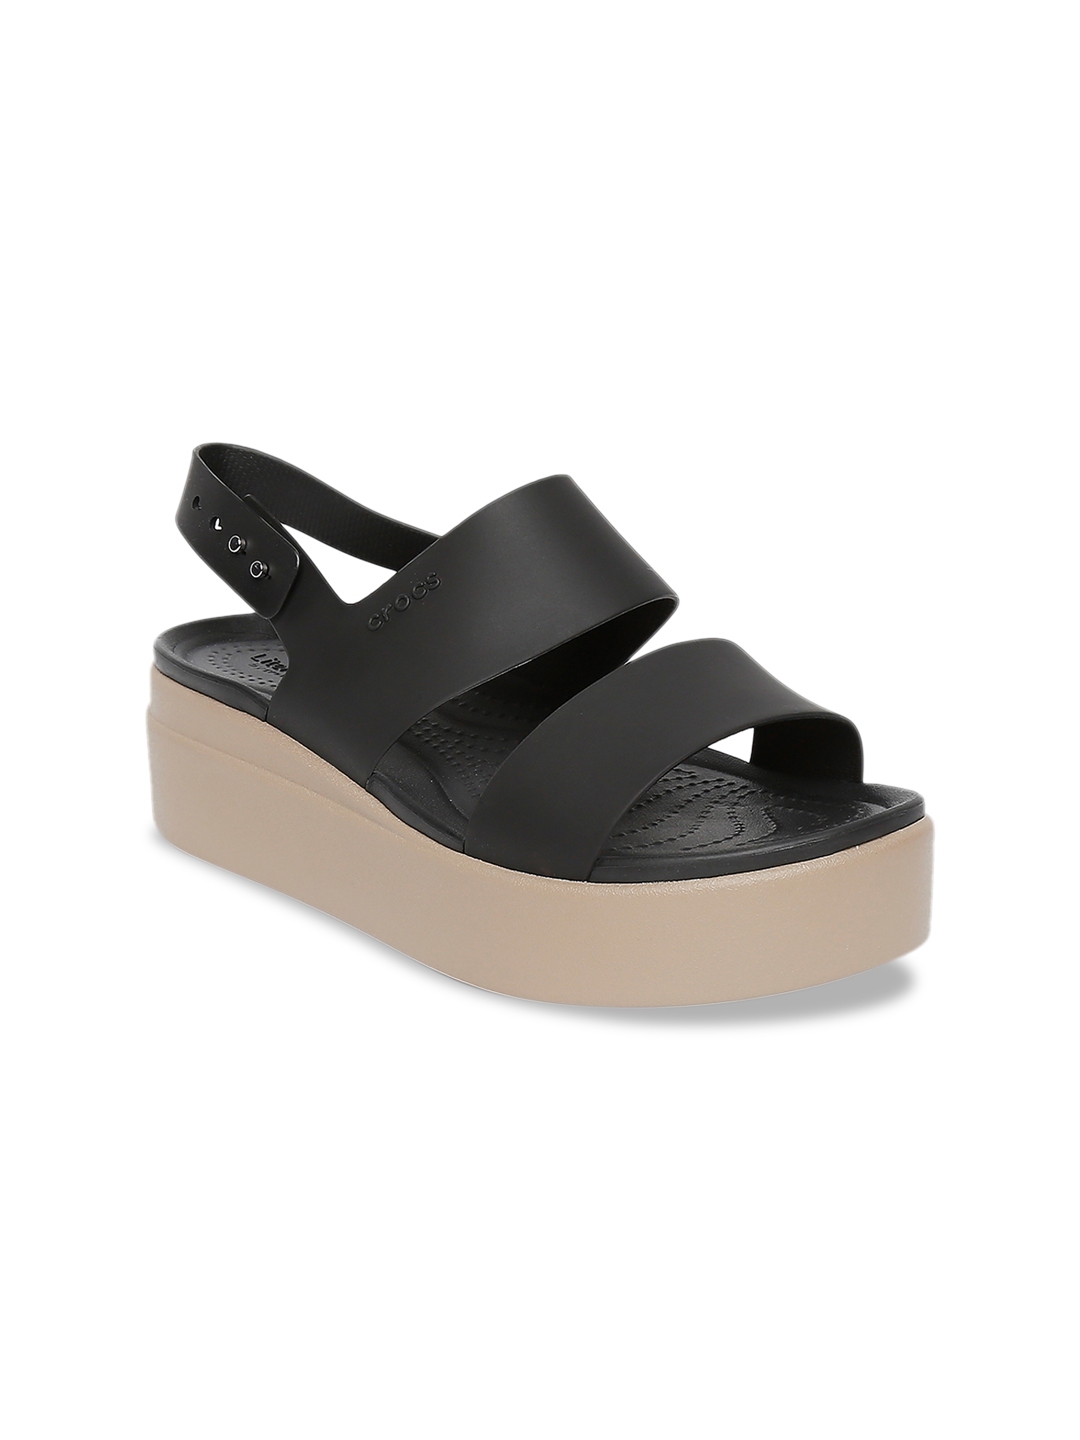 Buy Crocs Brooklyn Women Black Solid Sandals - Heels for Women 11524584 ...